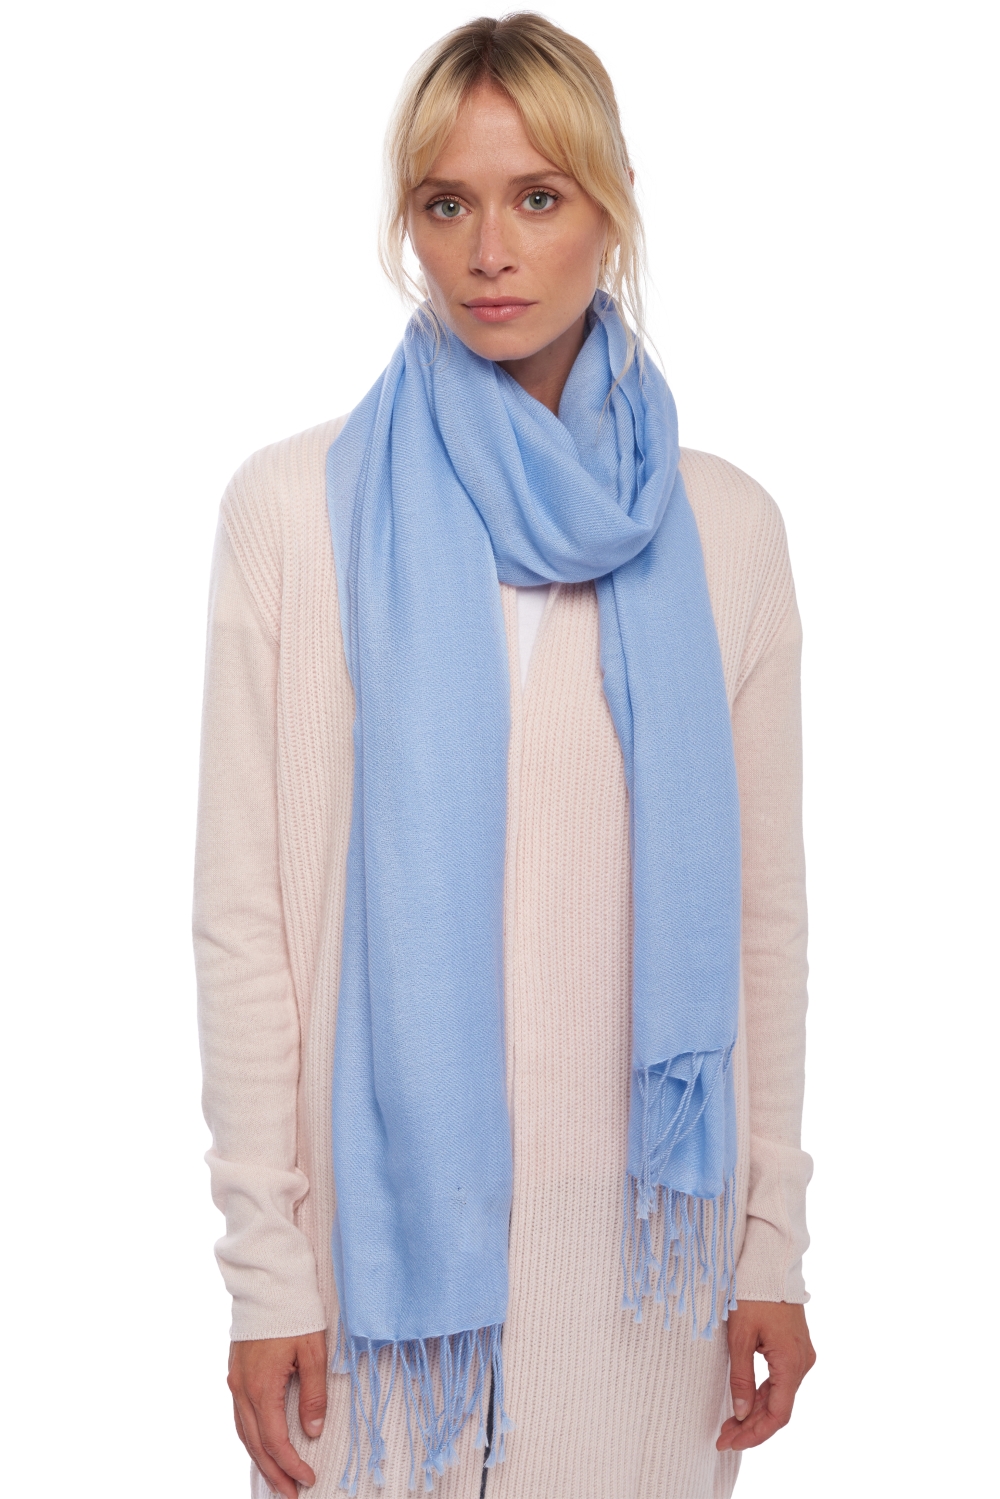 Cashmere accessories shawls diamant blue sky 204 cm x 92 cm